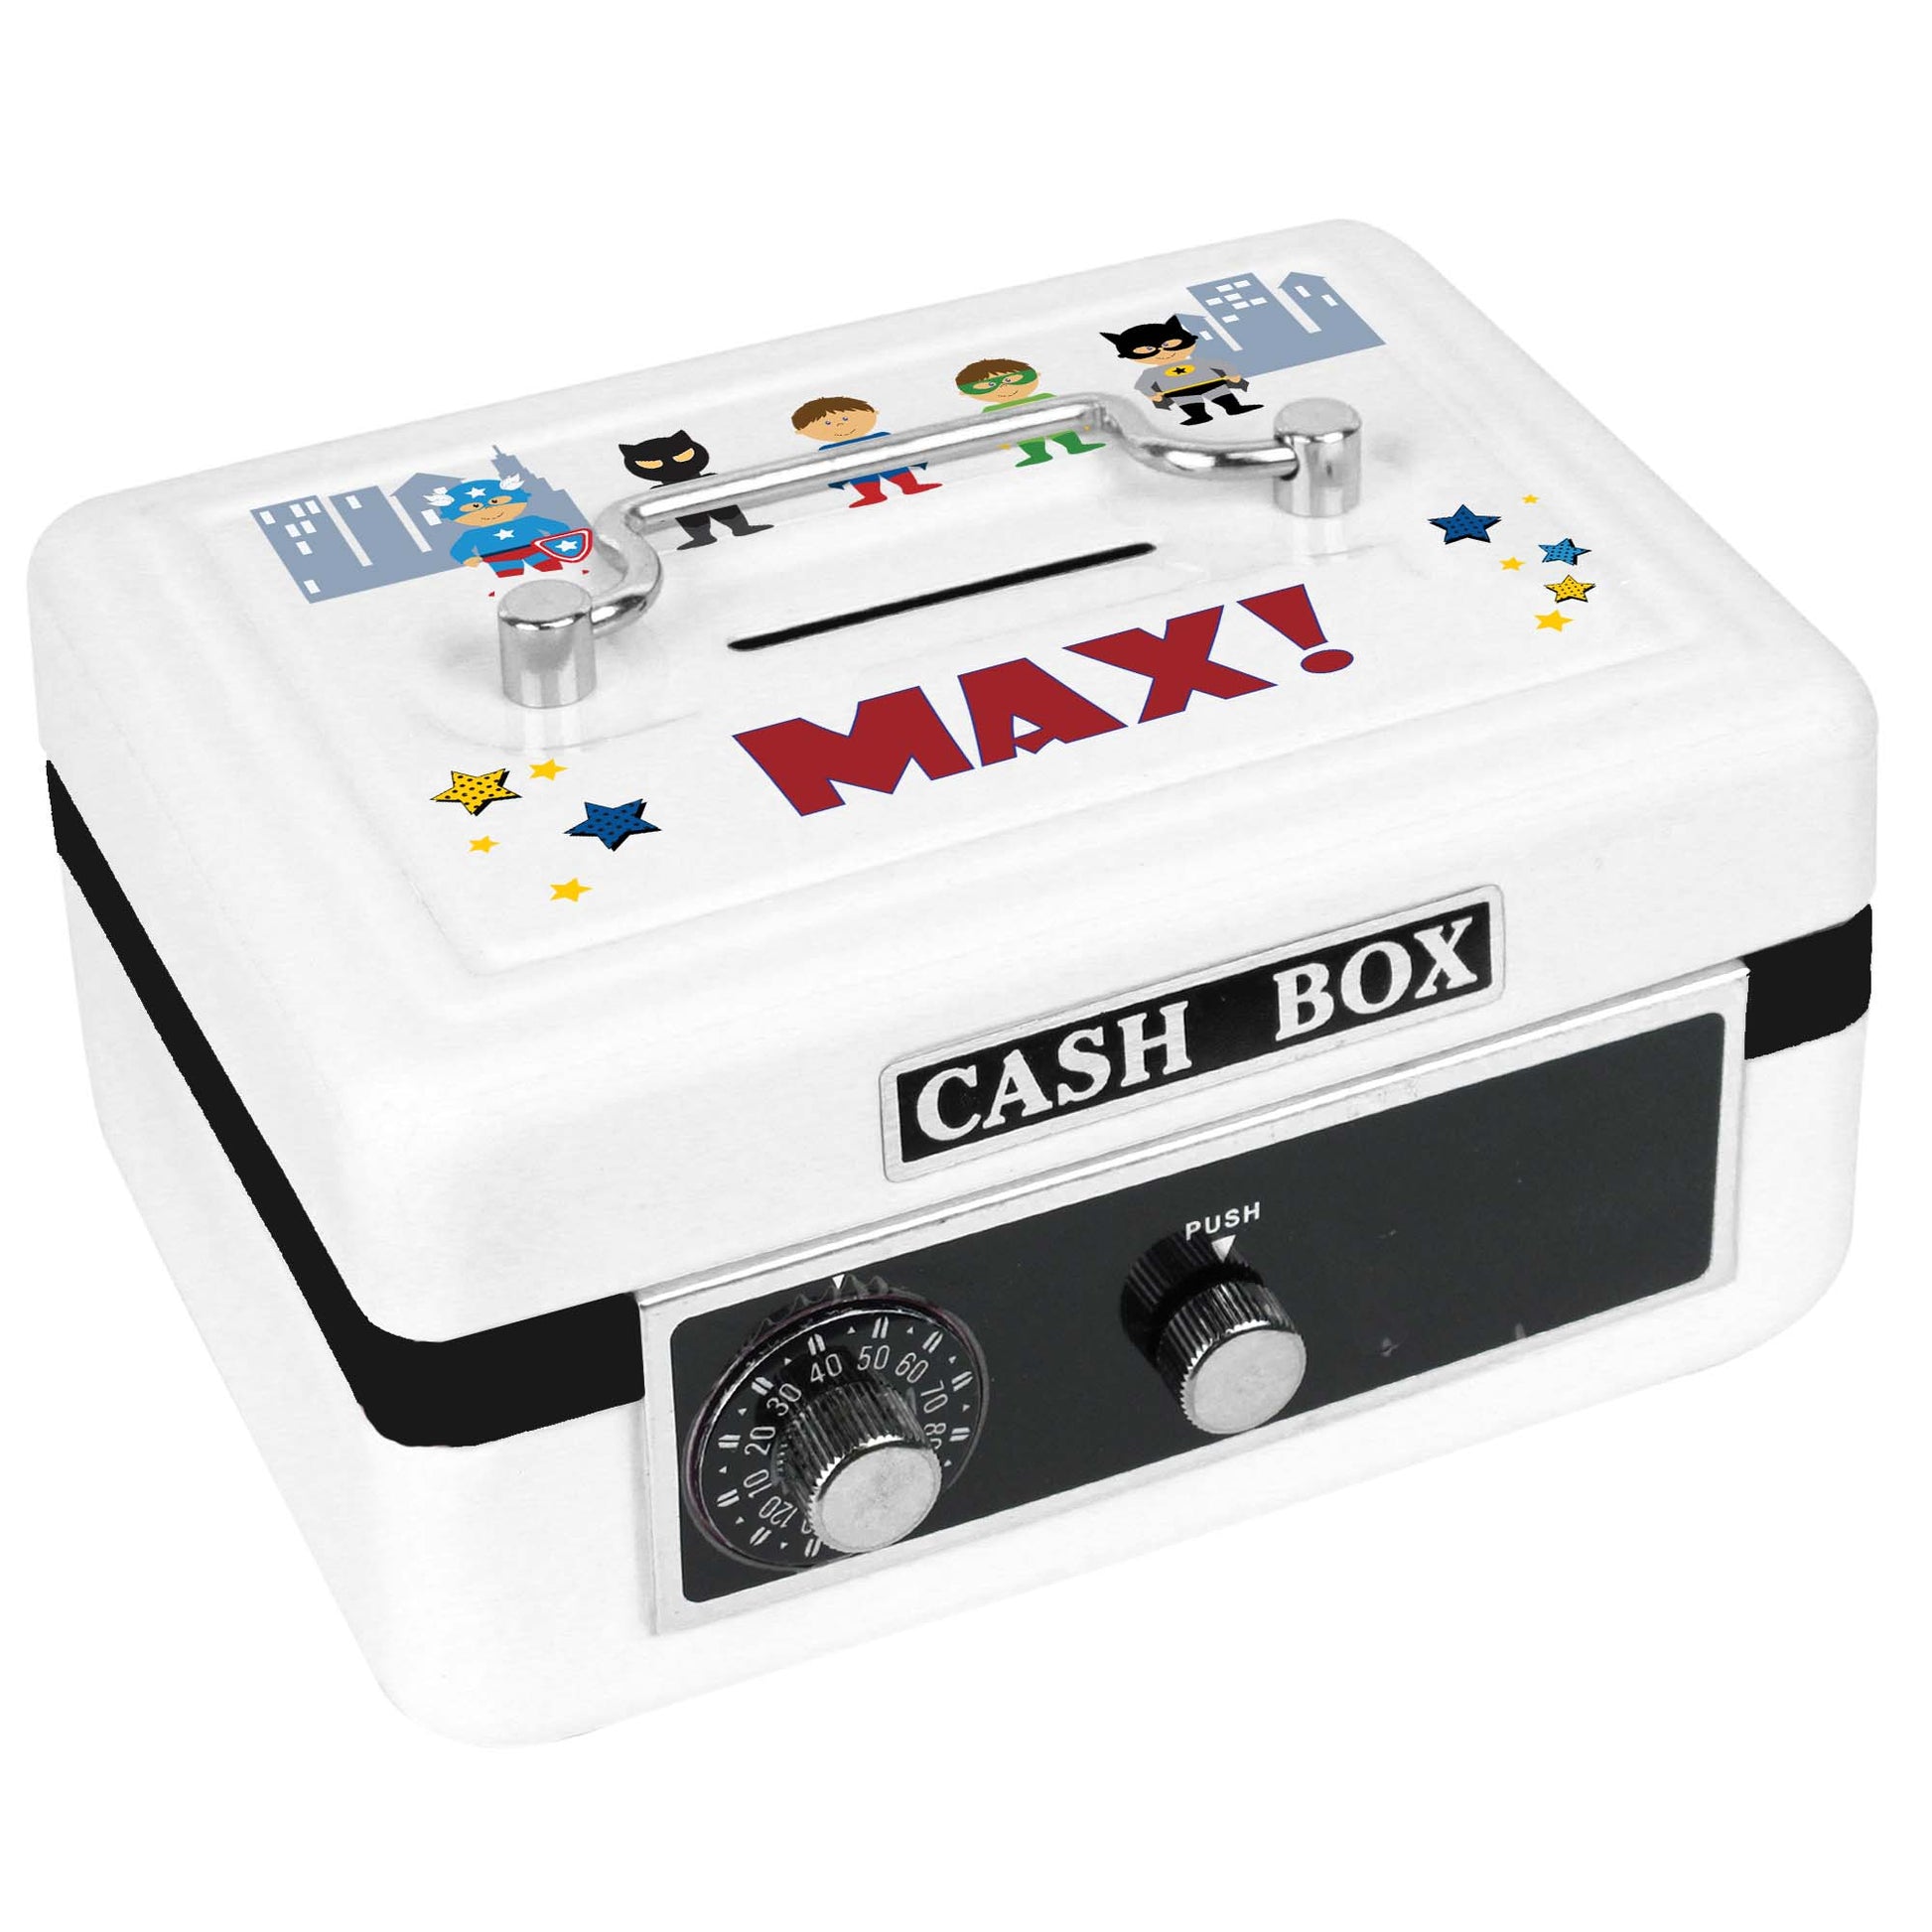 Personalized White Cash Box with Superhero design